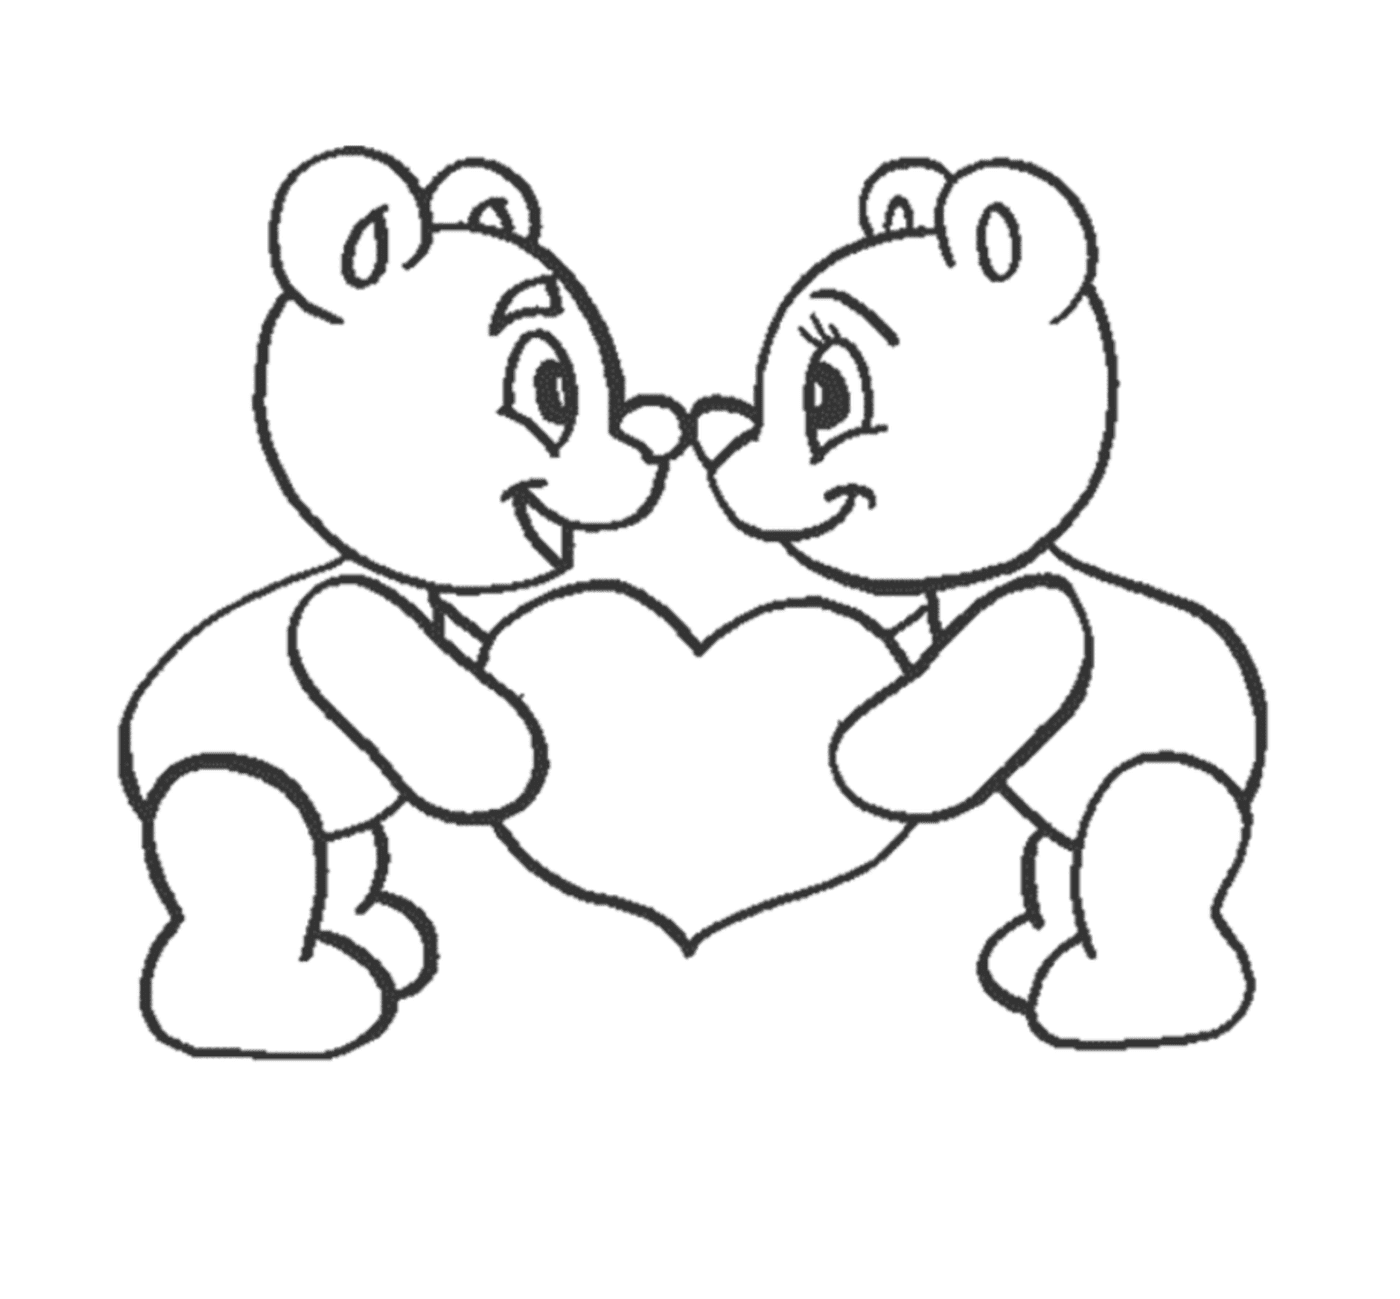   Deux ours en peluche tenant un cœur dans leurs mains 